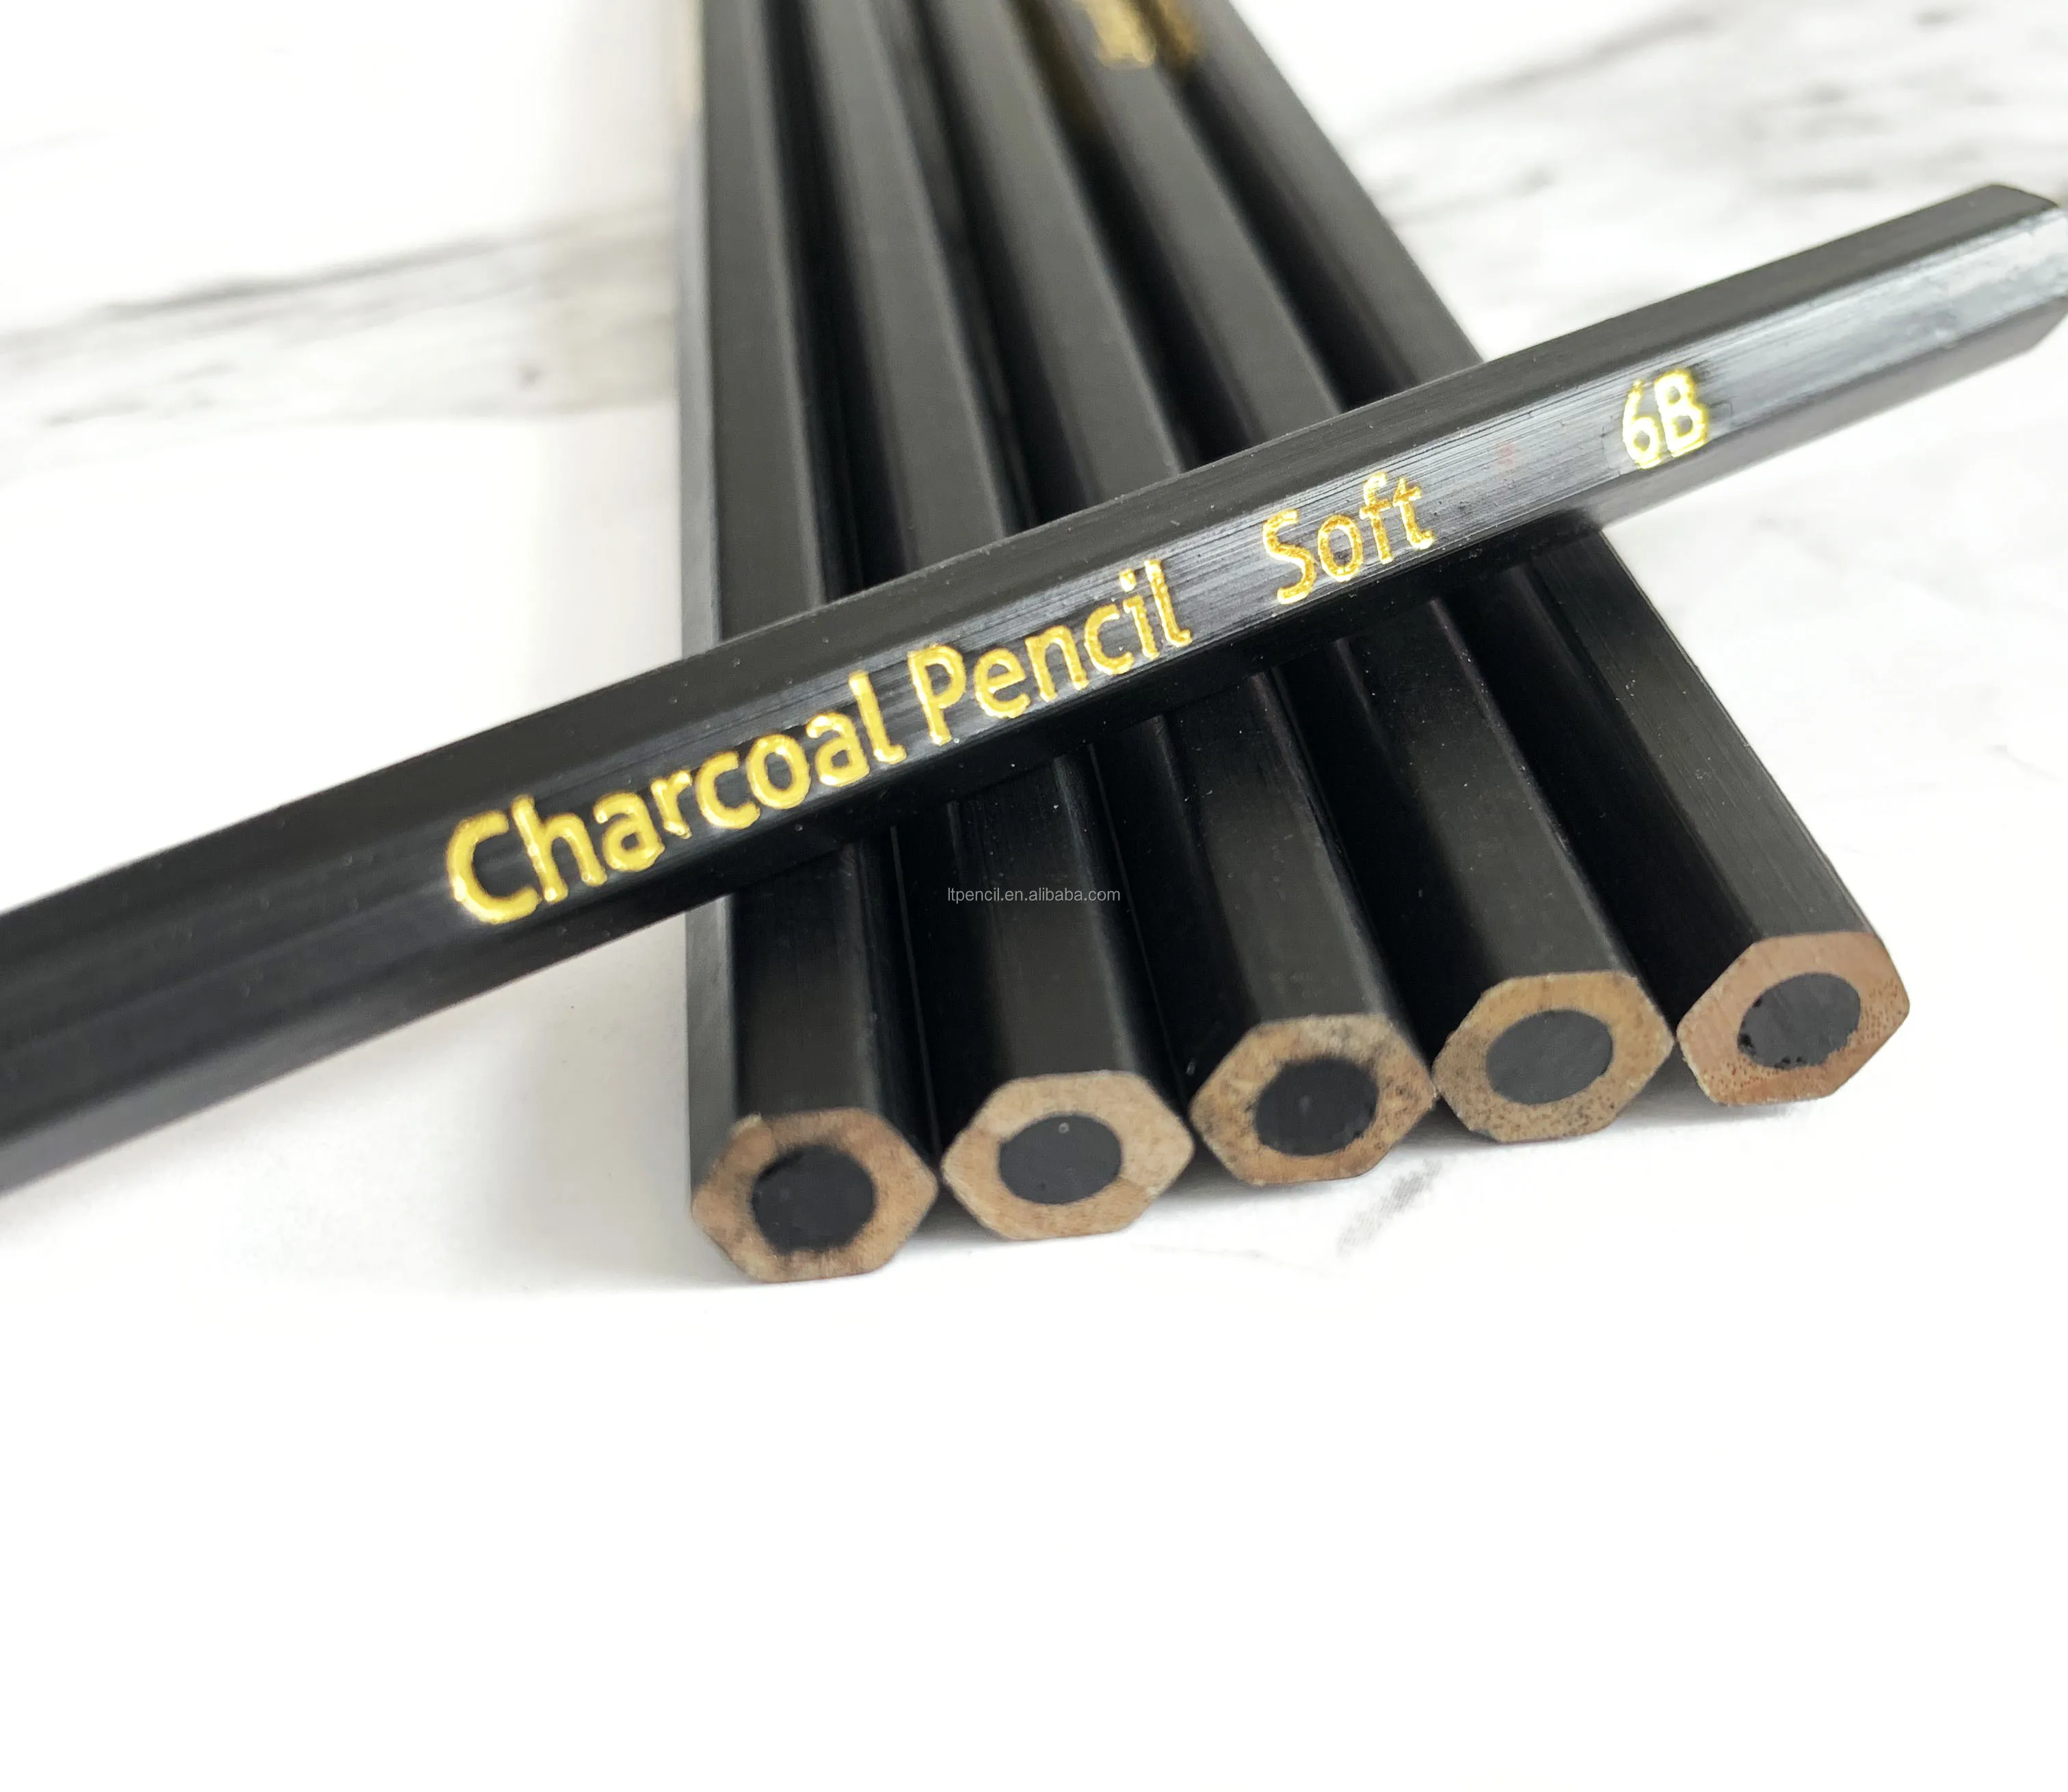 2b charcoal pencil